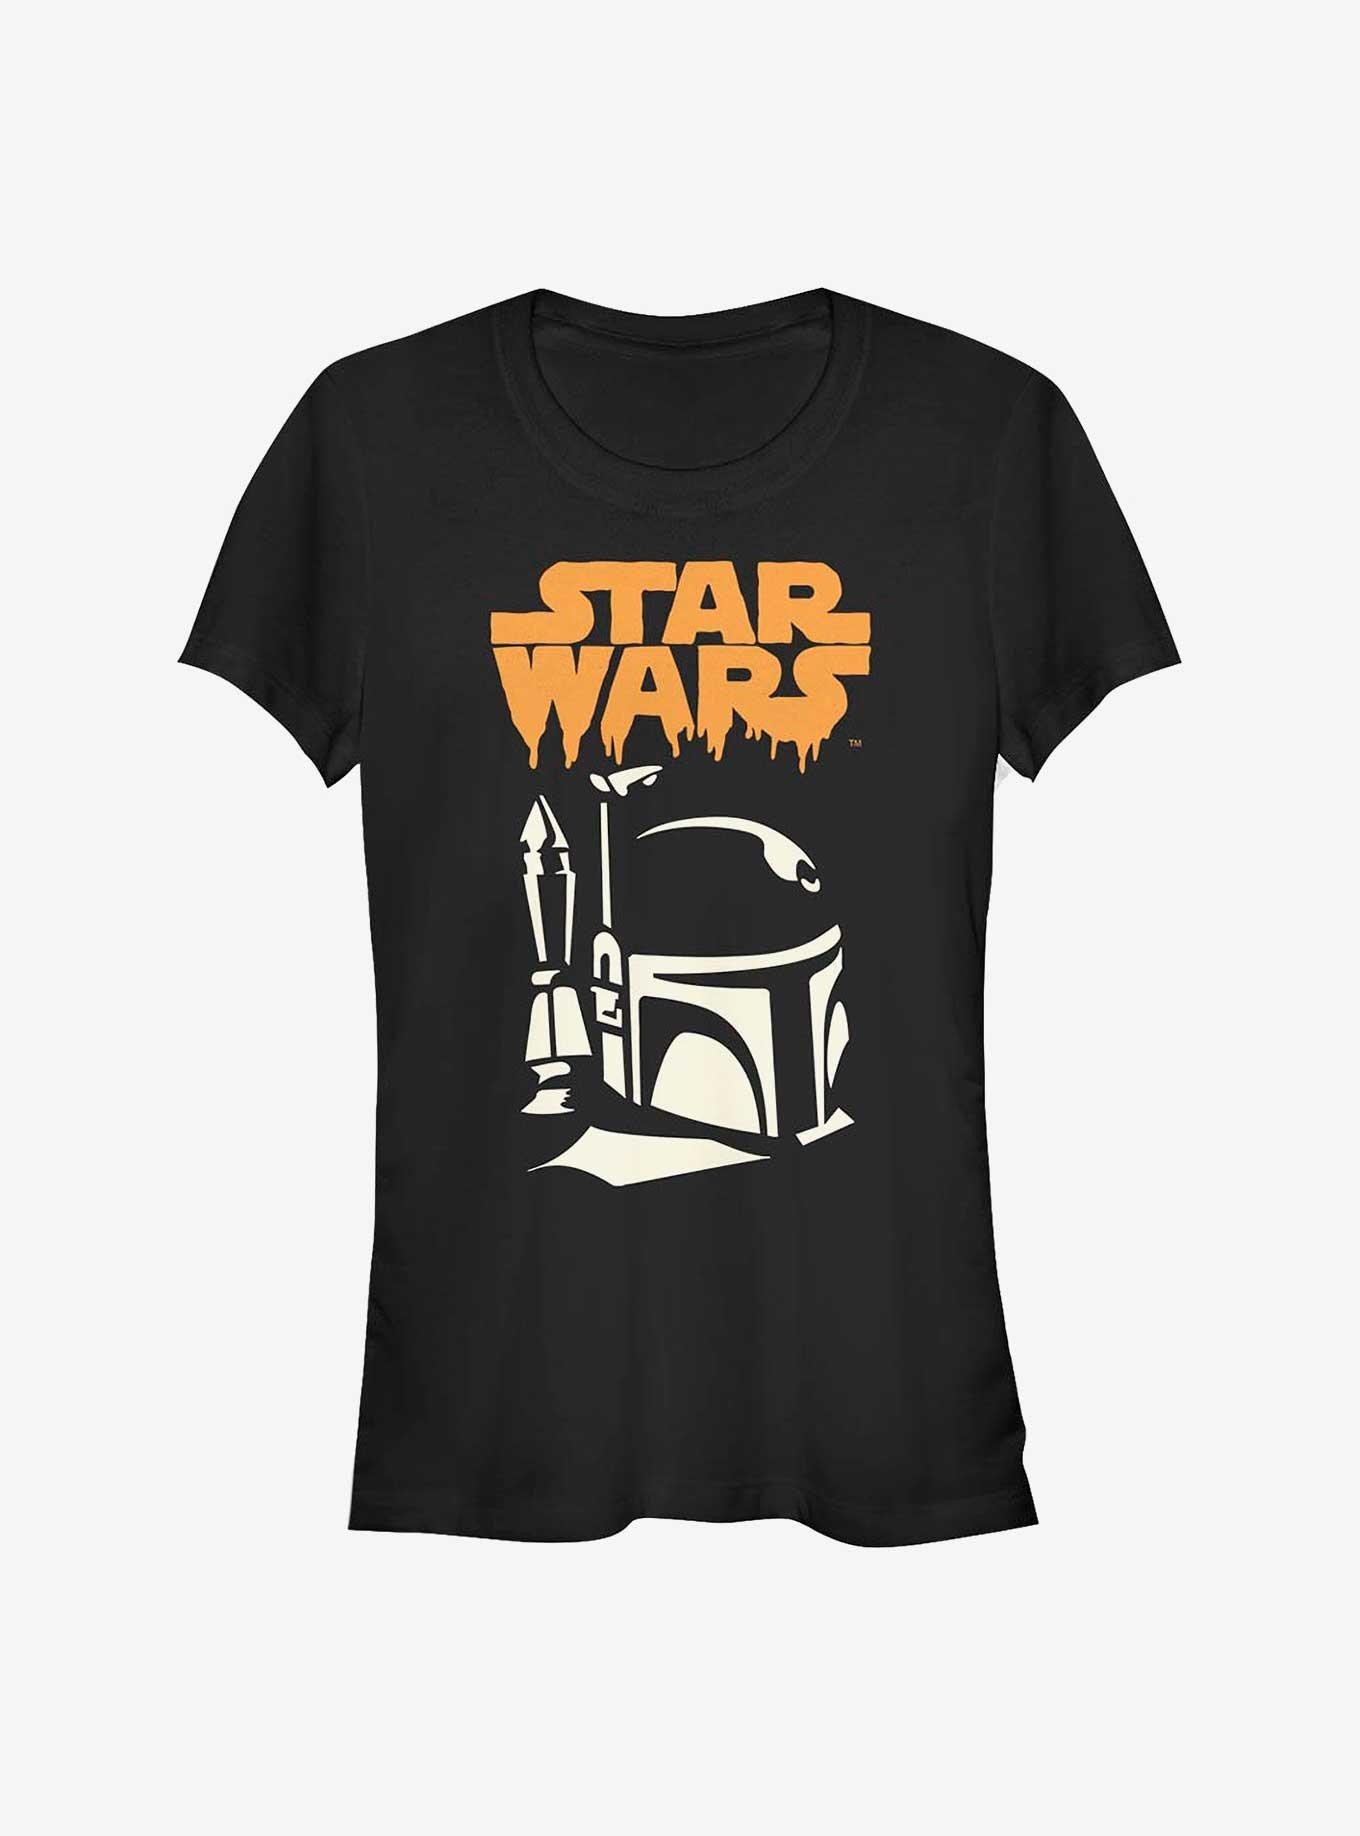 Star Wars Boba Fett Ghoul Girl's T-Shirt